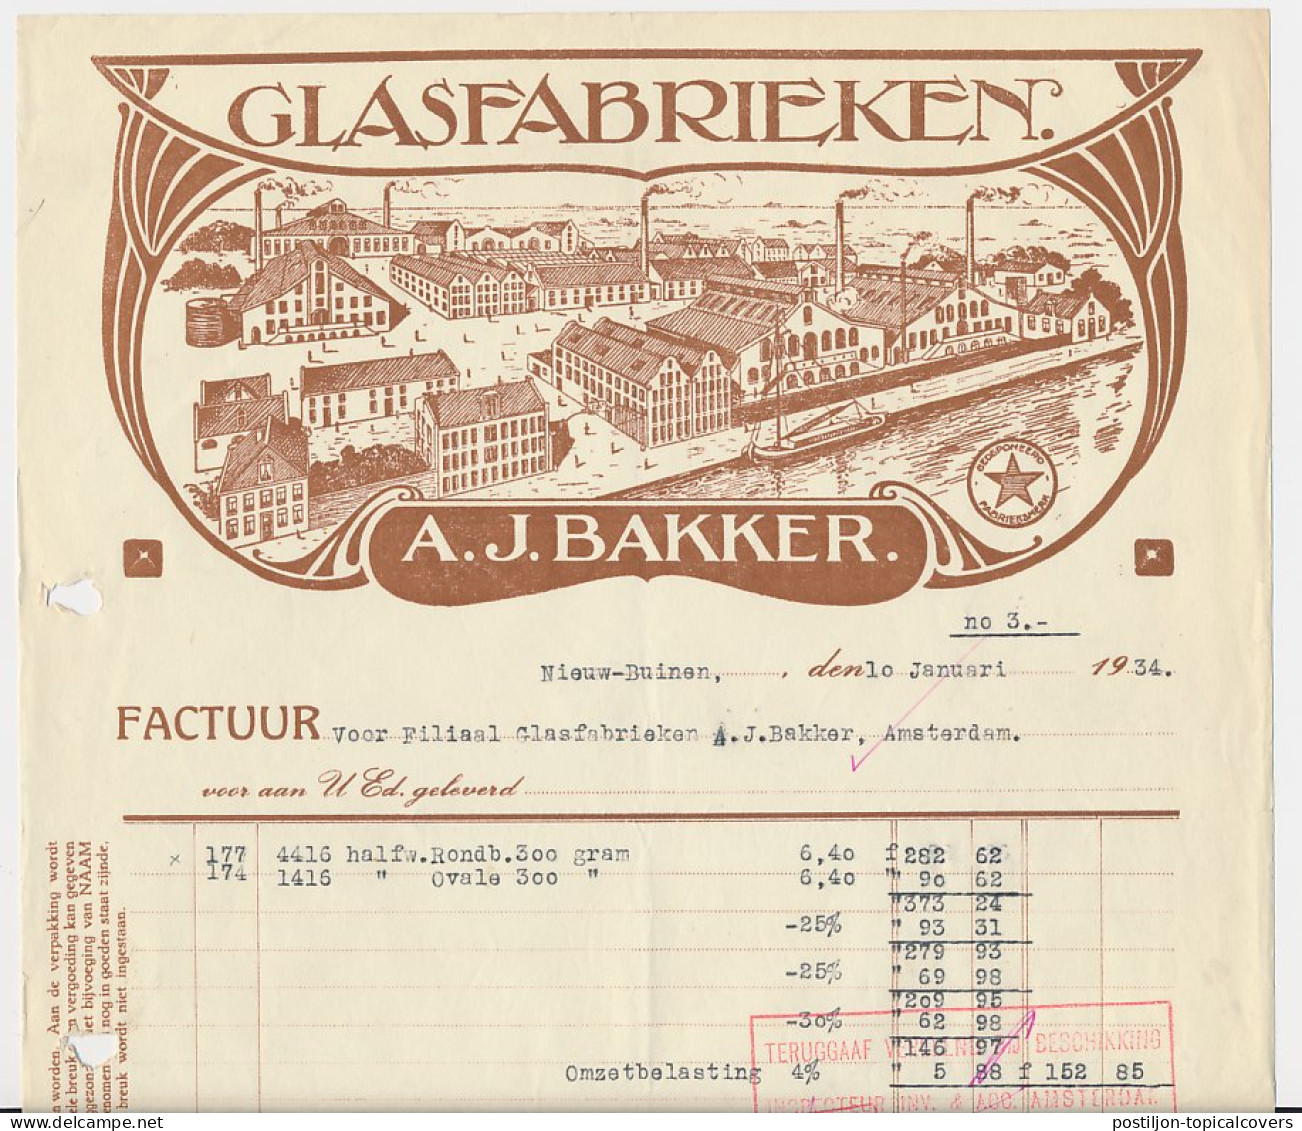 Omzetbelasting Diverse Waarden - Nieuw Buinen 1934 - Fiscale Zegels